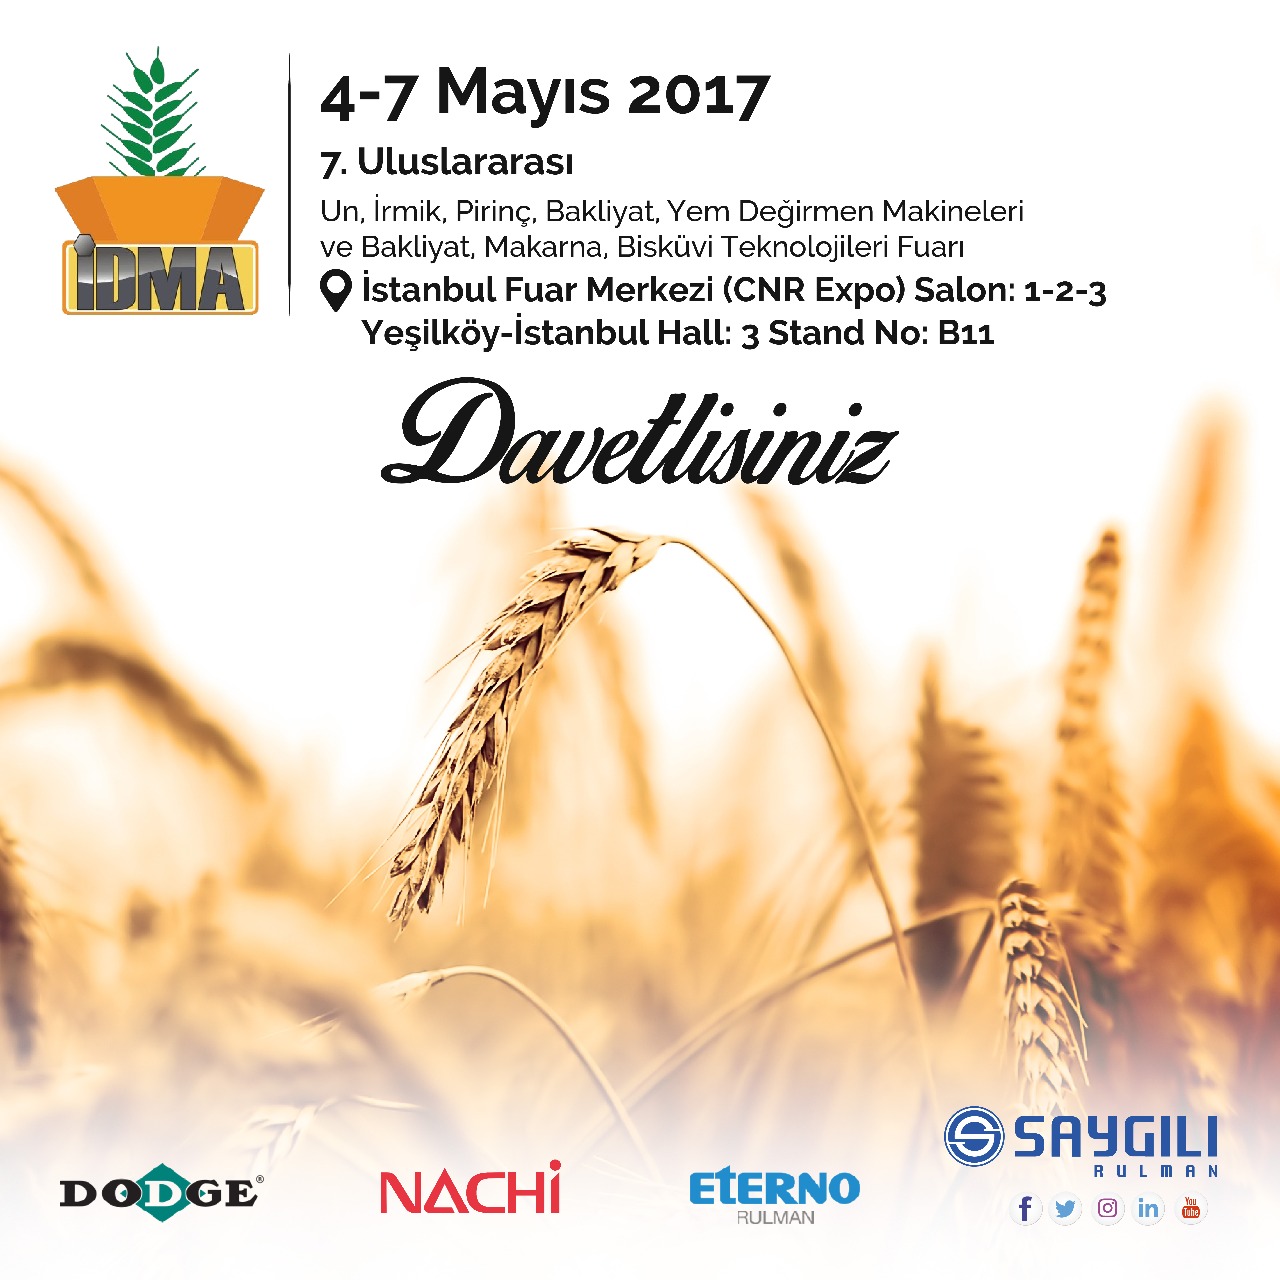 04-07 Mayıs İDMA 7. Uluslararası Un, İrmik, Pirinç, Mısır, Bulgur, Yem Değirmen Makineleri ve Bakliyat, Makarna, Bisküvi Teknolojileri Fuarı 'ndayız